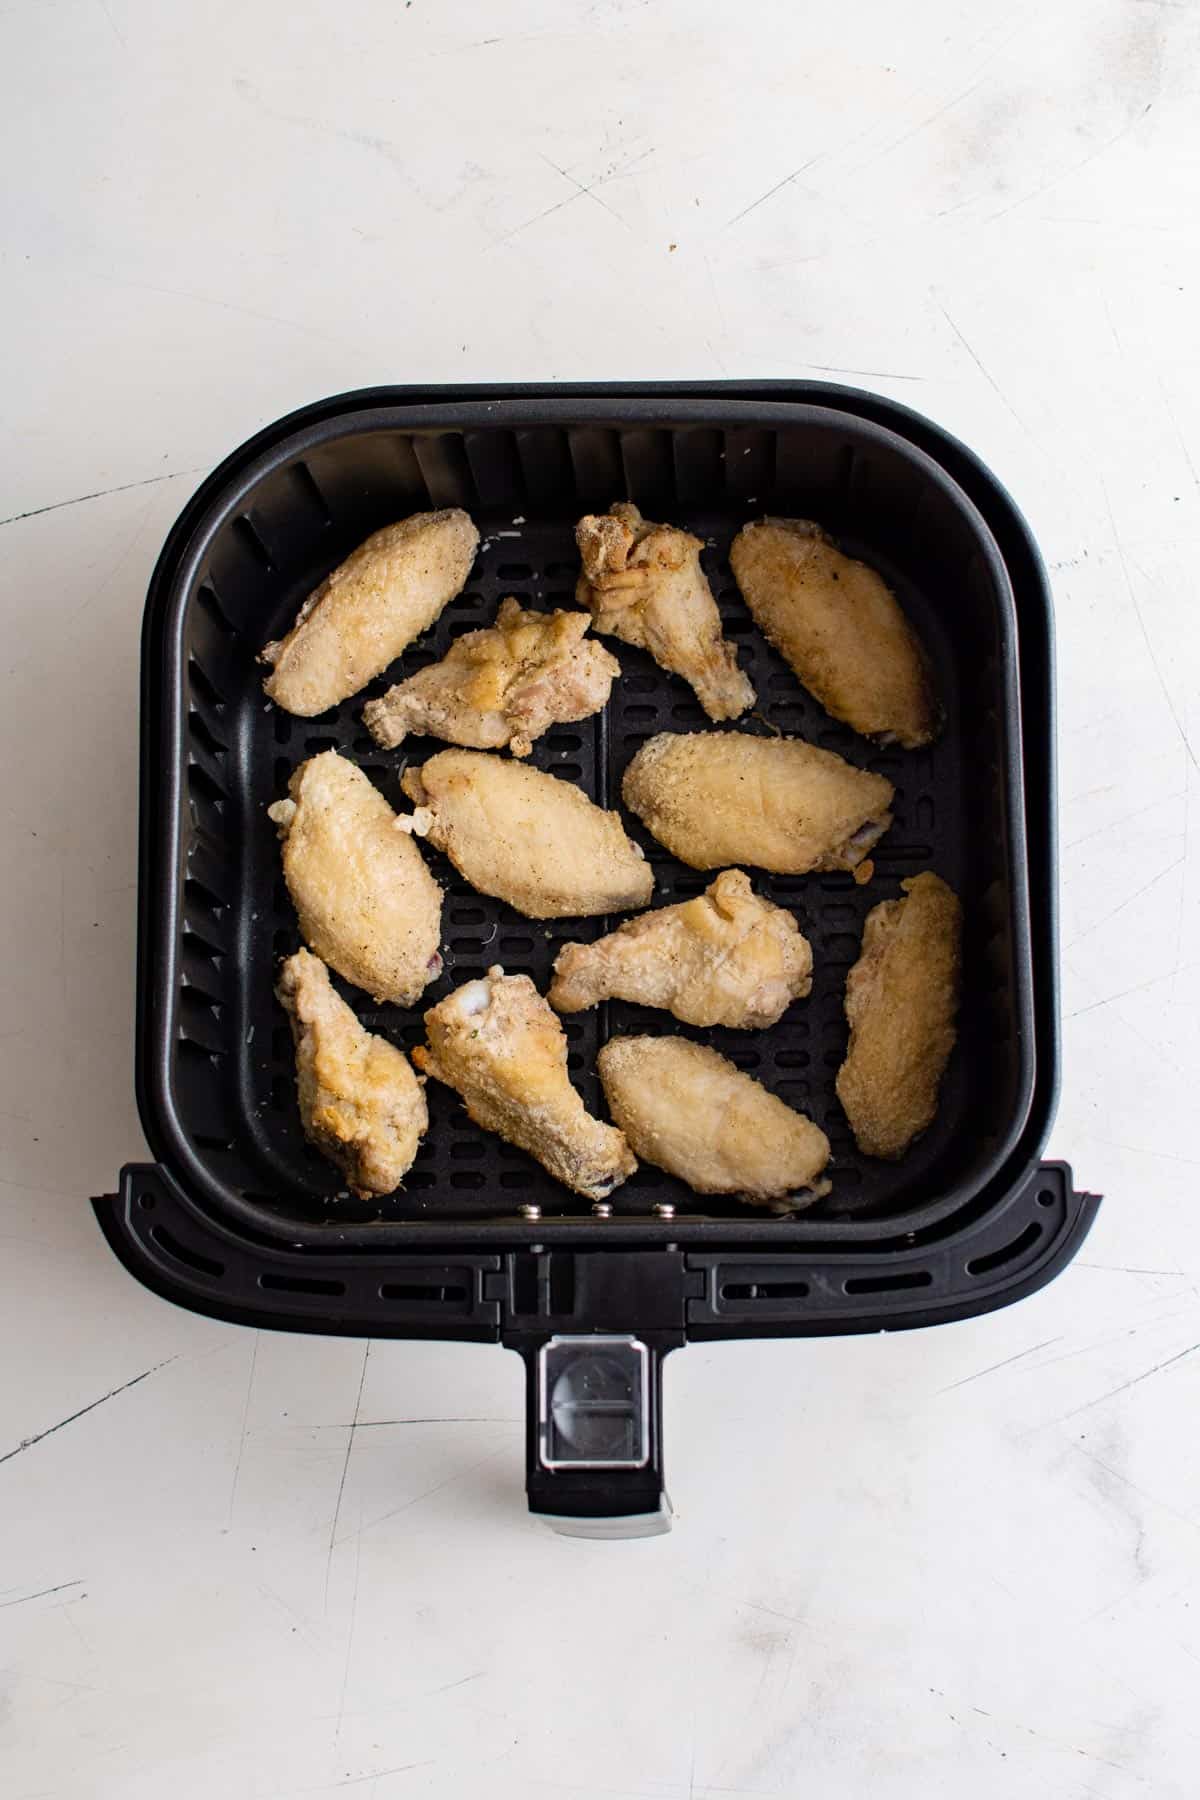 top down view of chicken wings in air fryer basket